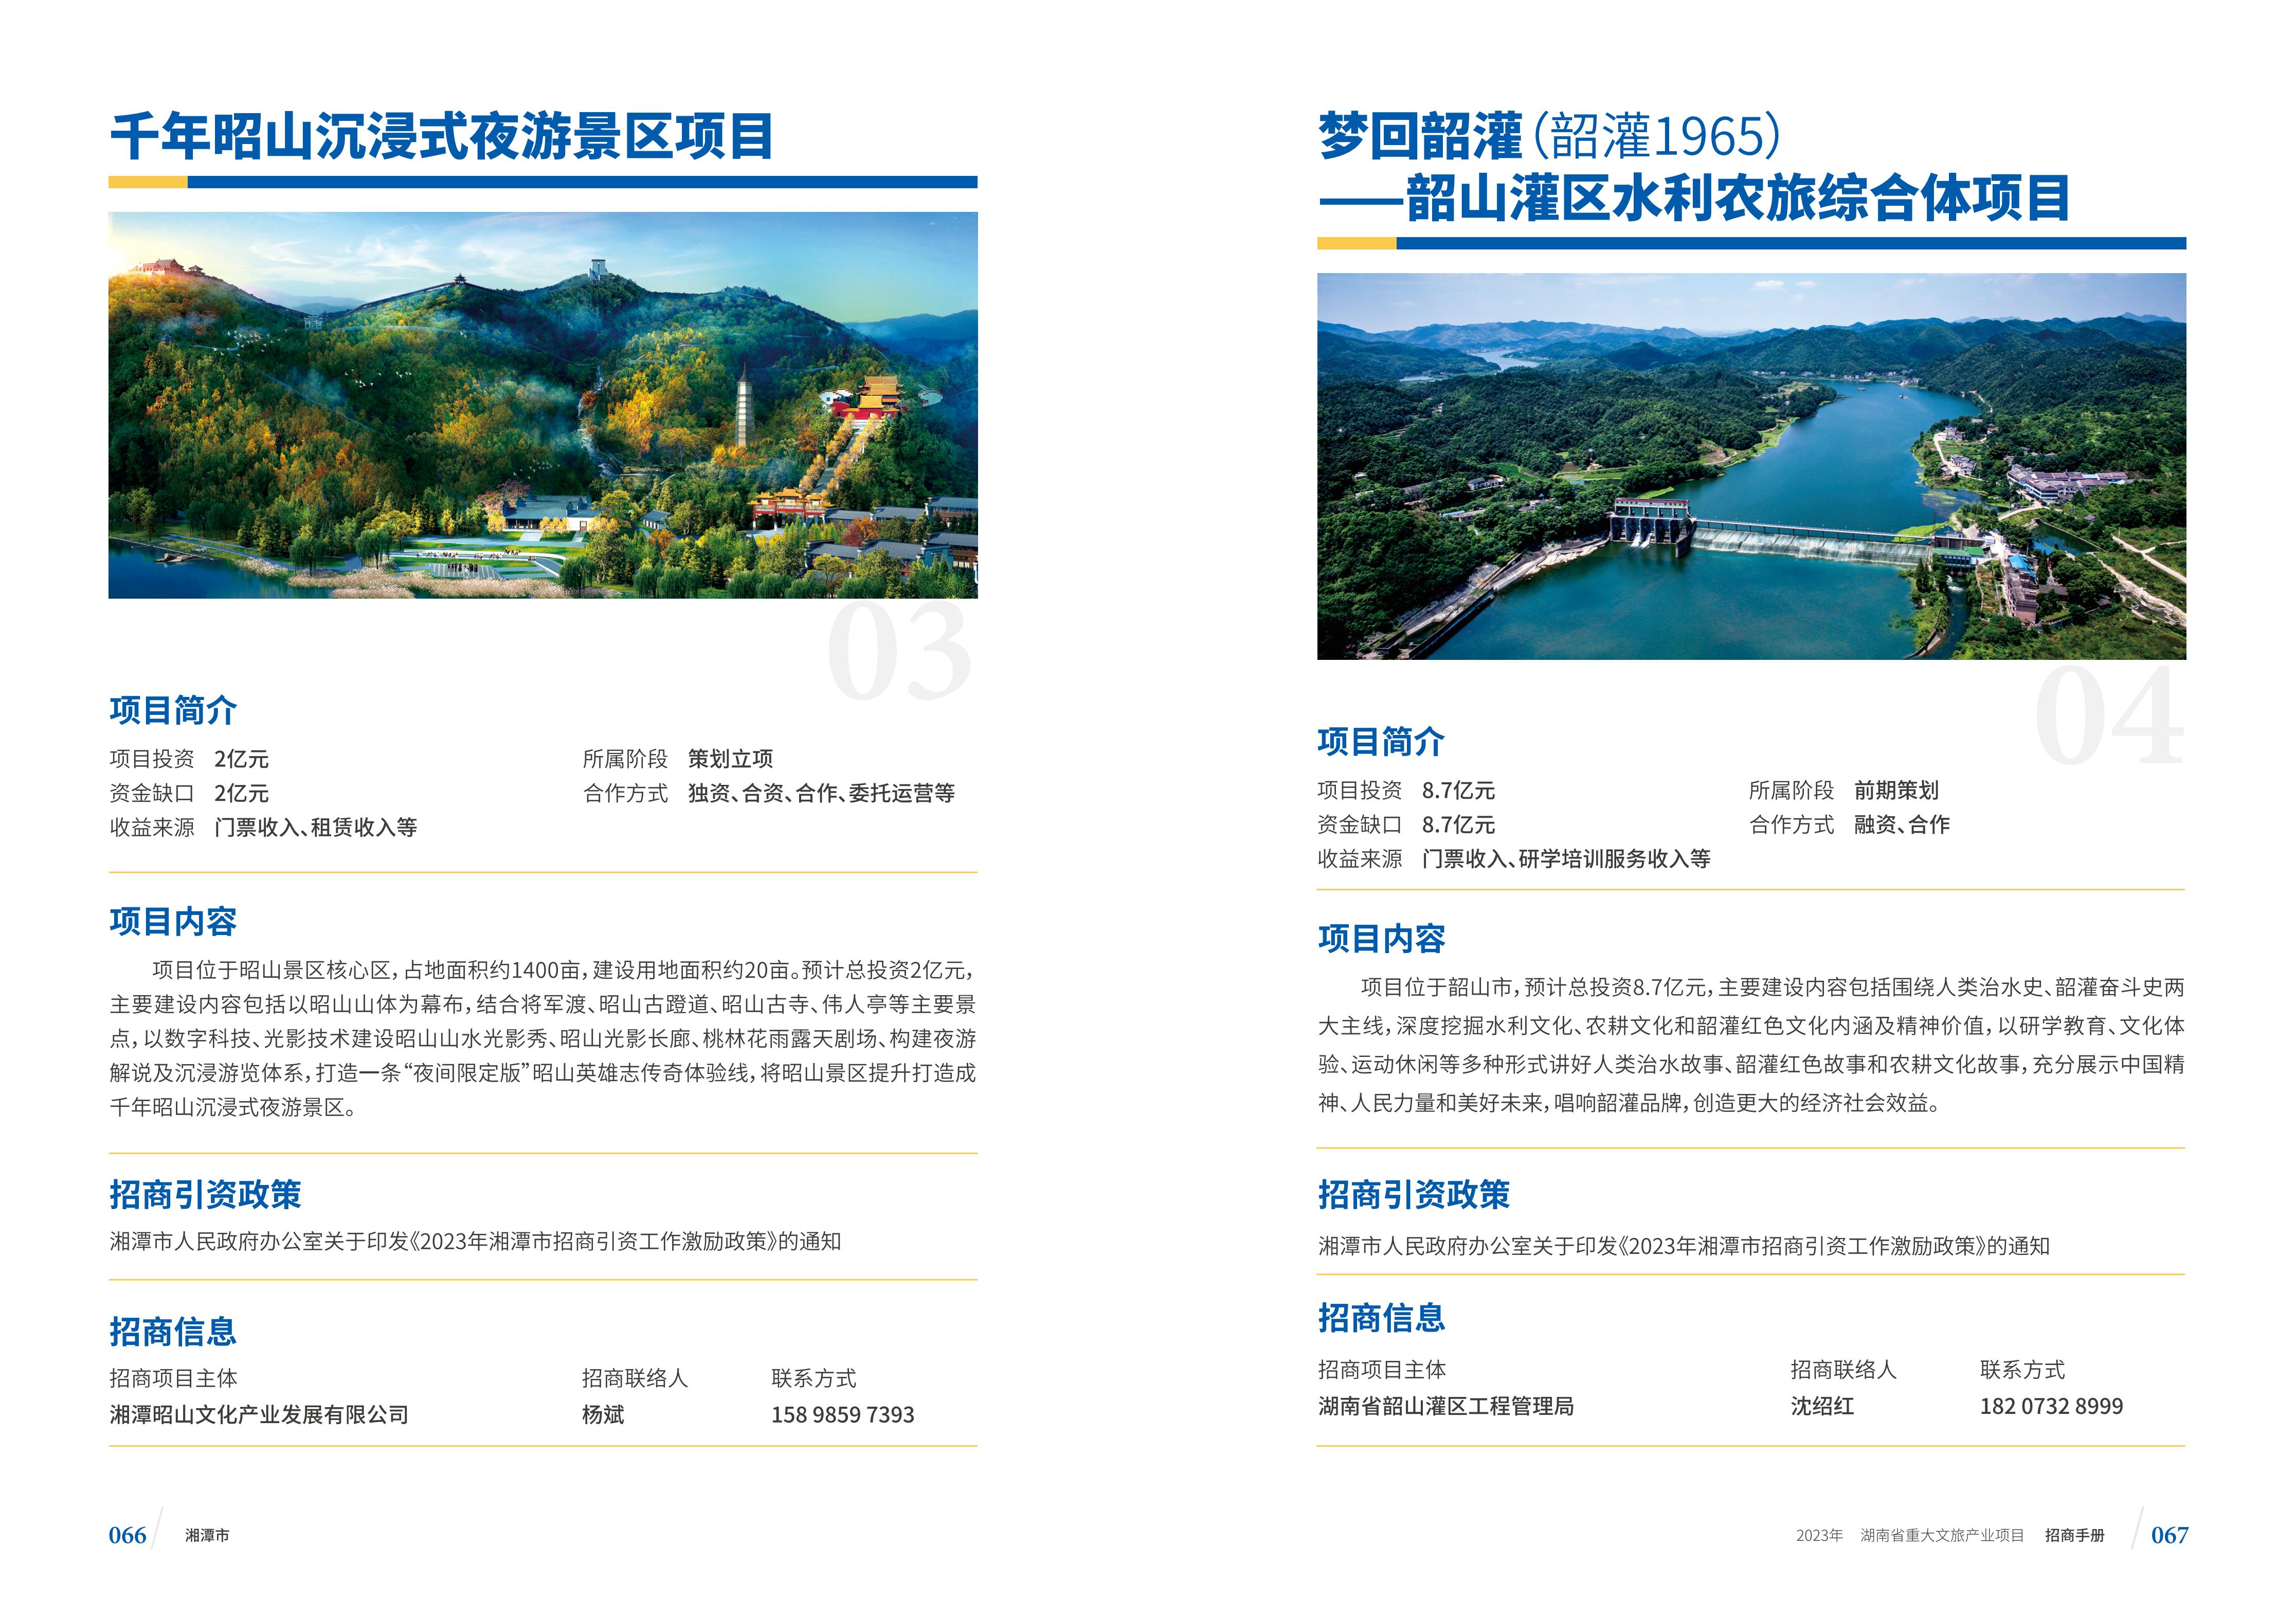 湖南省重大文旅产业项目招手册线上链接版_41.jpg